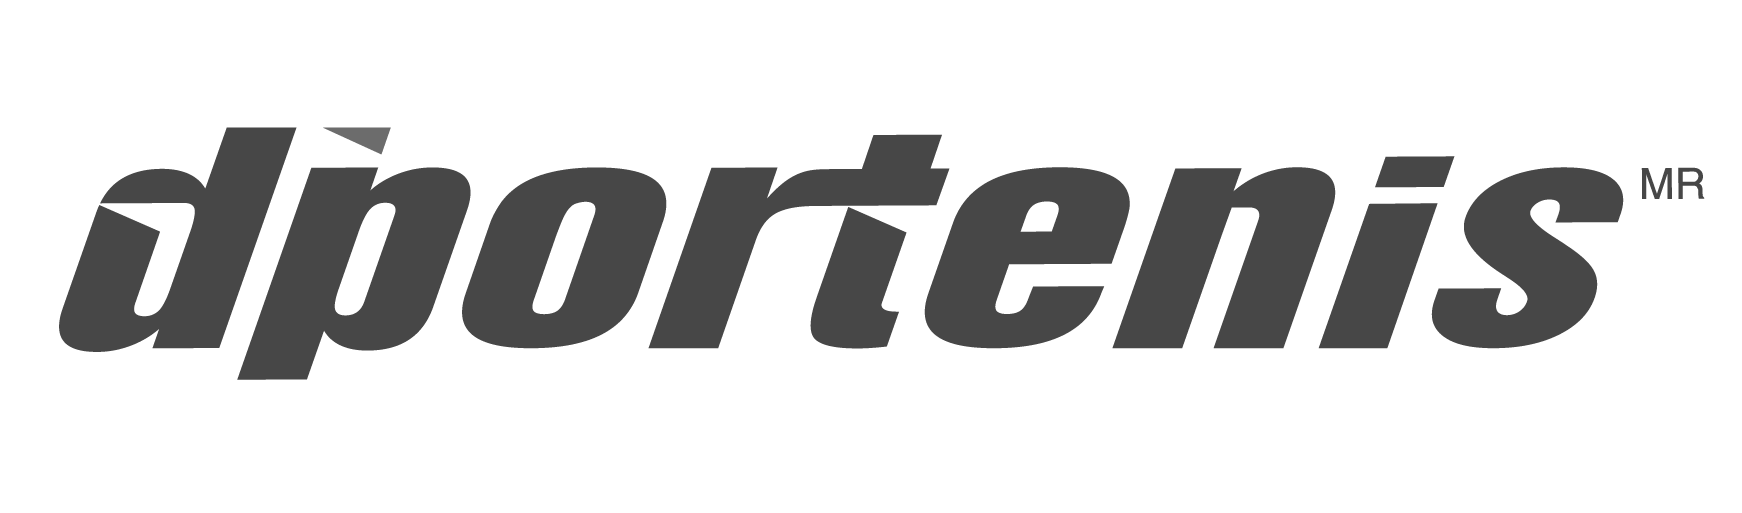 CrearMedia Dportenis logotipo